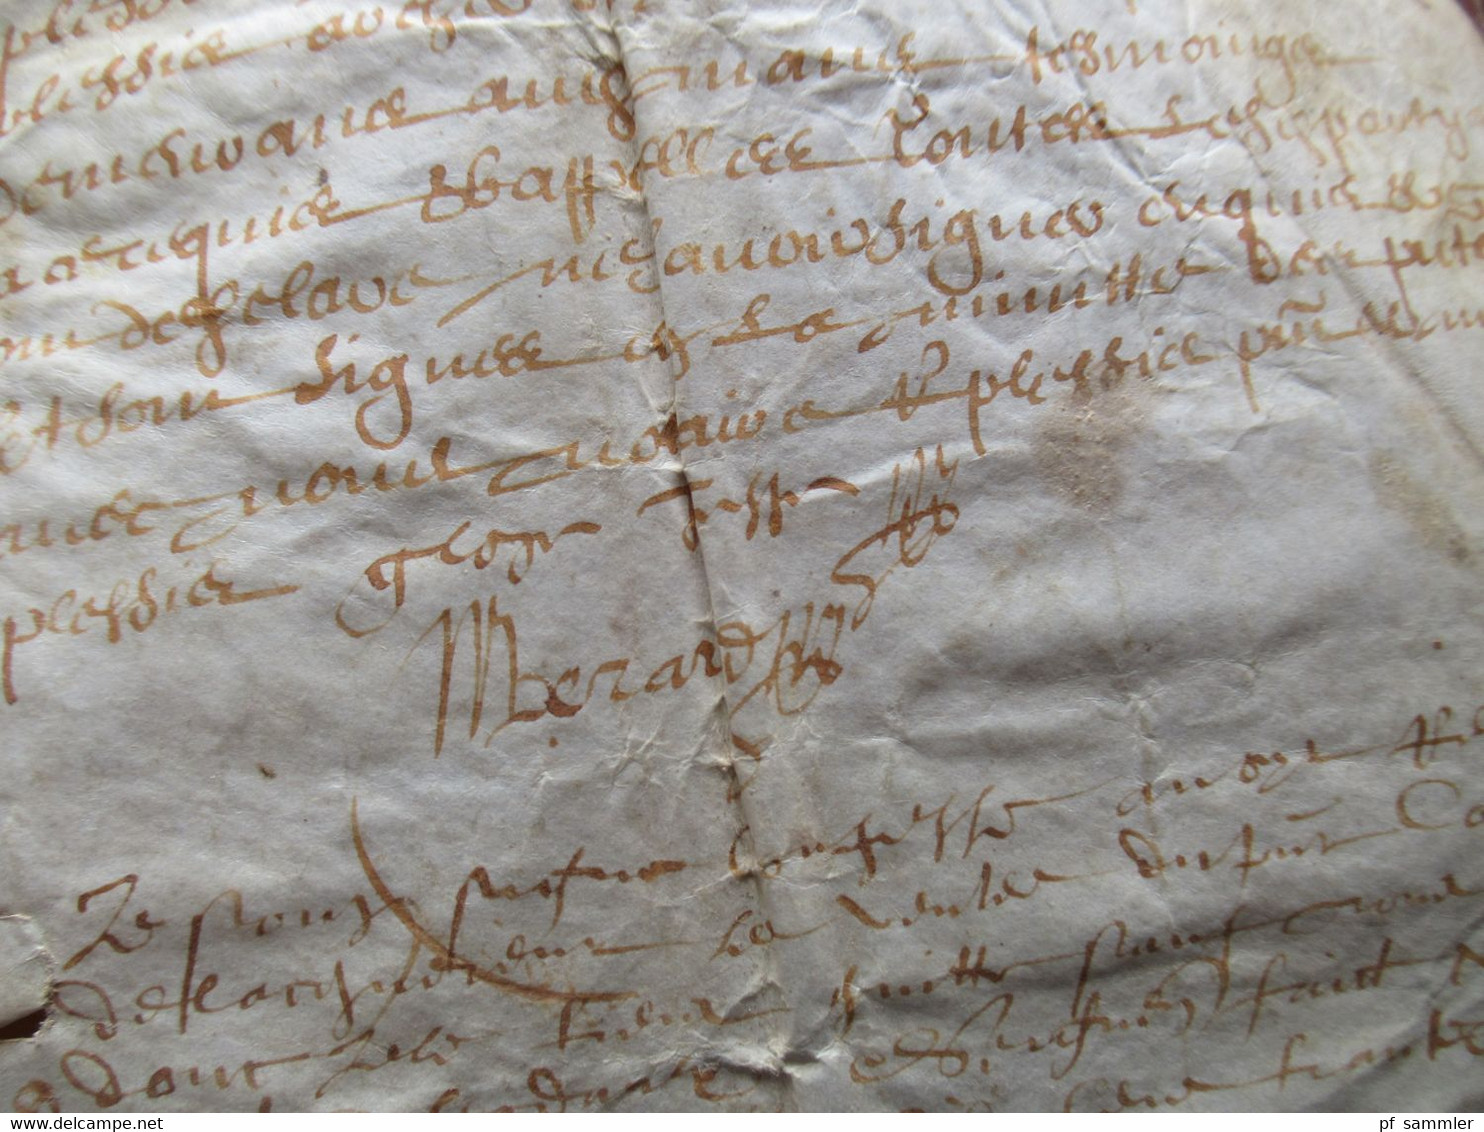 Frankreich Brief / Dokument 1635 / 17. Jahrhundert mit Autograph / Schnörkelunterschrift!